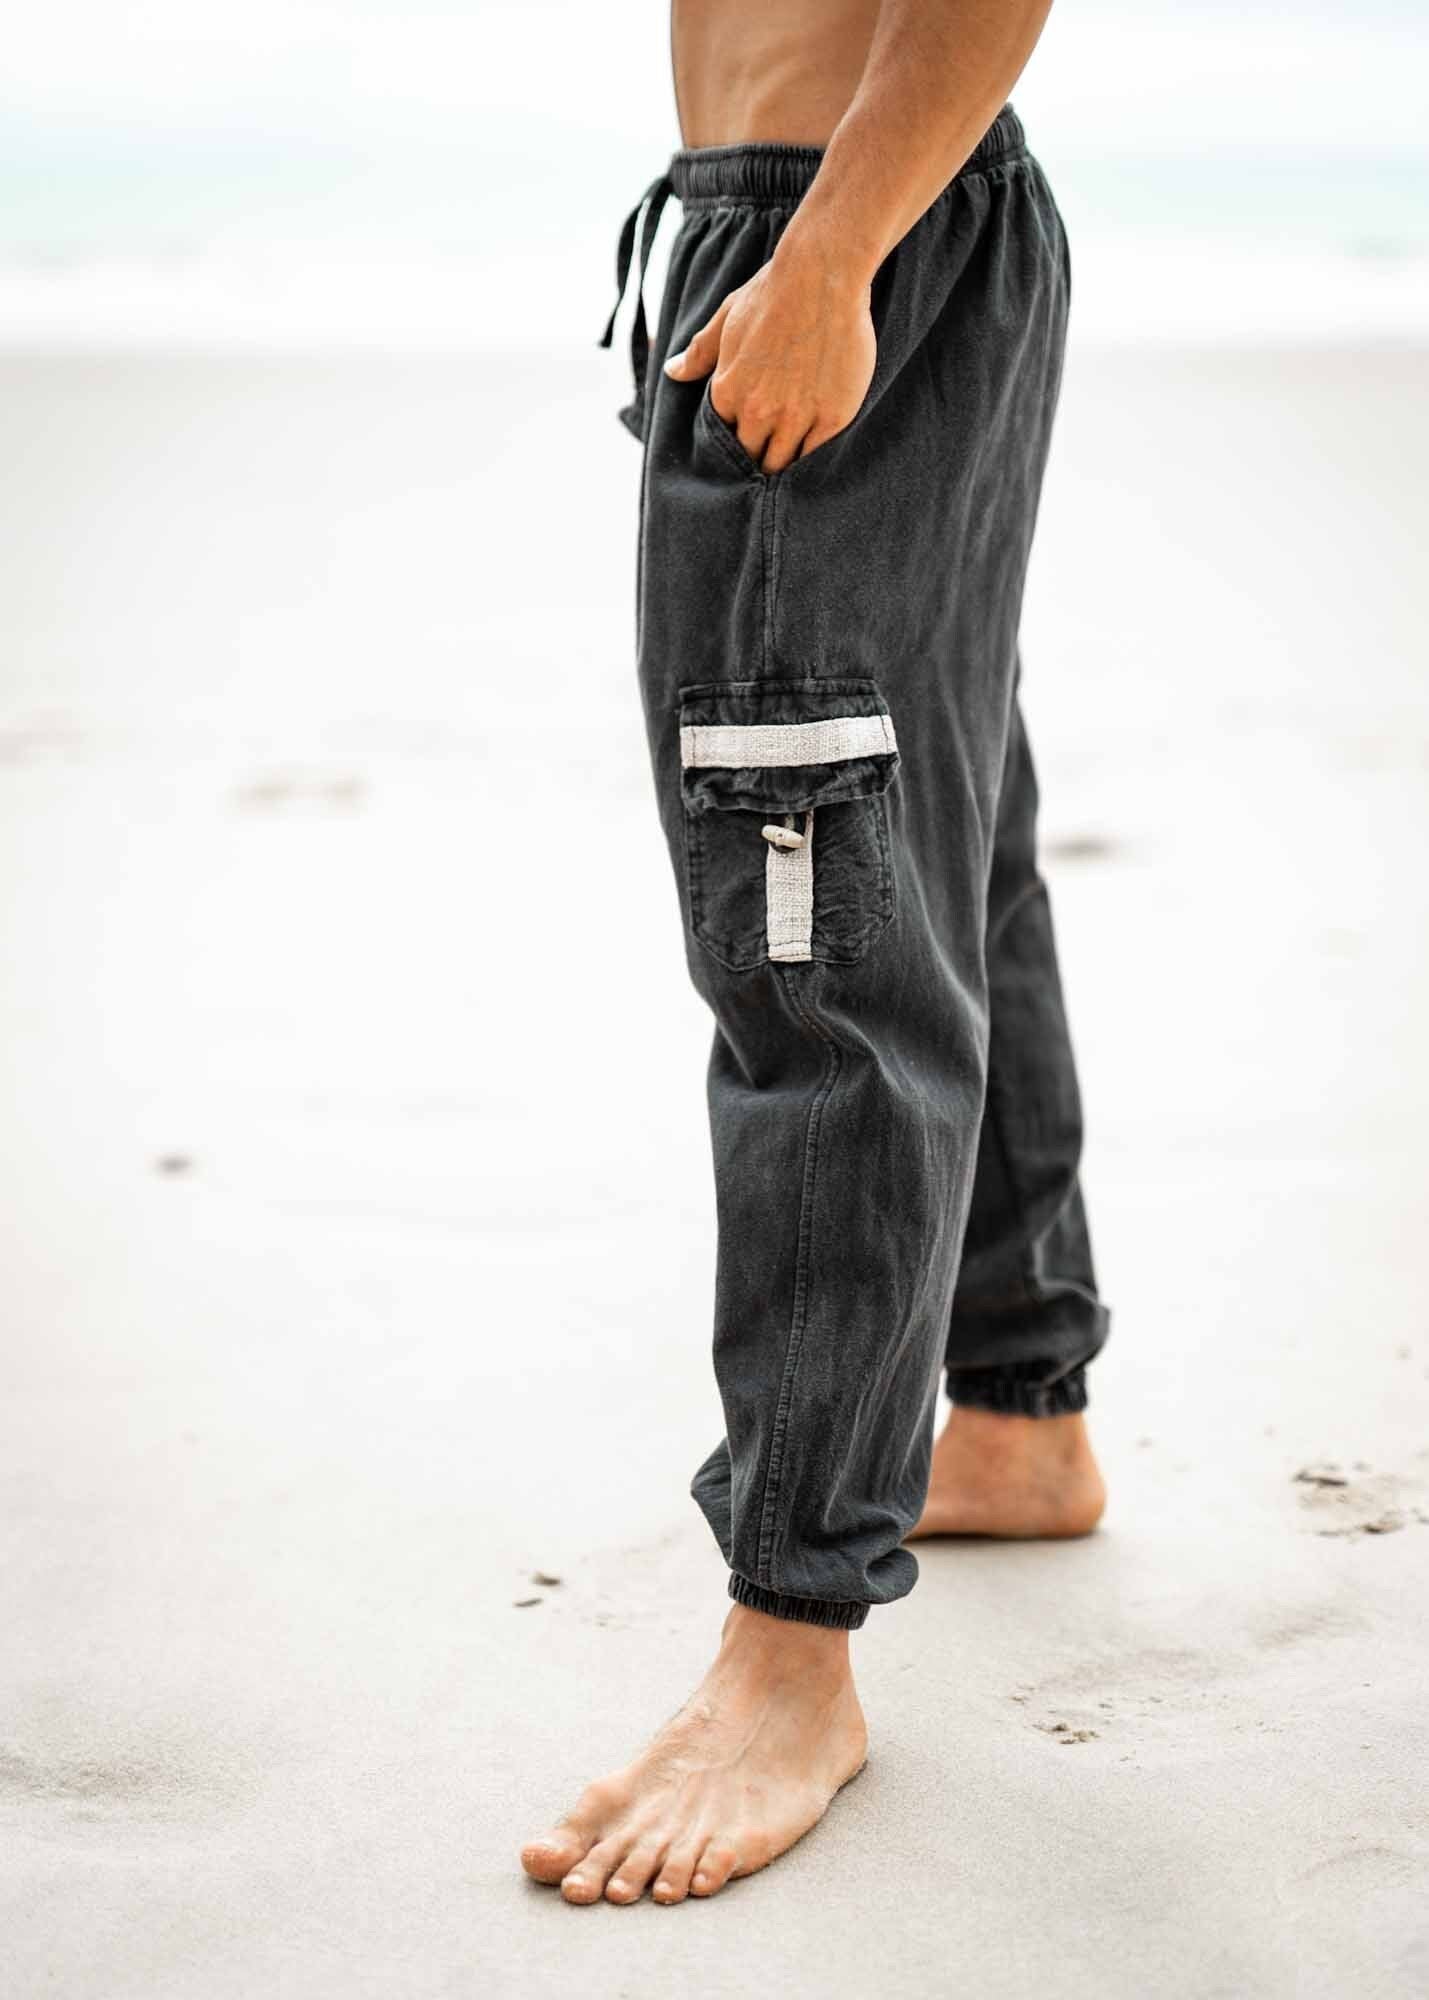 OKKO Faded Black Organic Hemp and Cotton Mens Pants Handmade Four Pockets Eco friendly Sustainable Comfortable Earthy Yoga Gypsy Boho AJJAYA